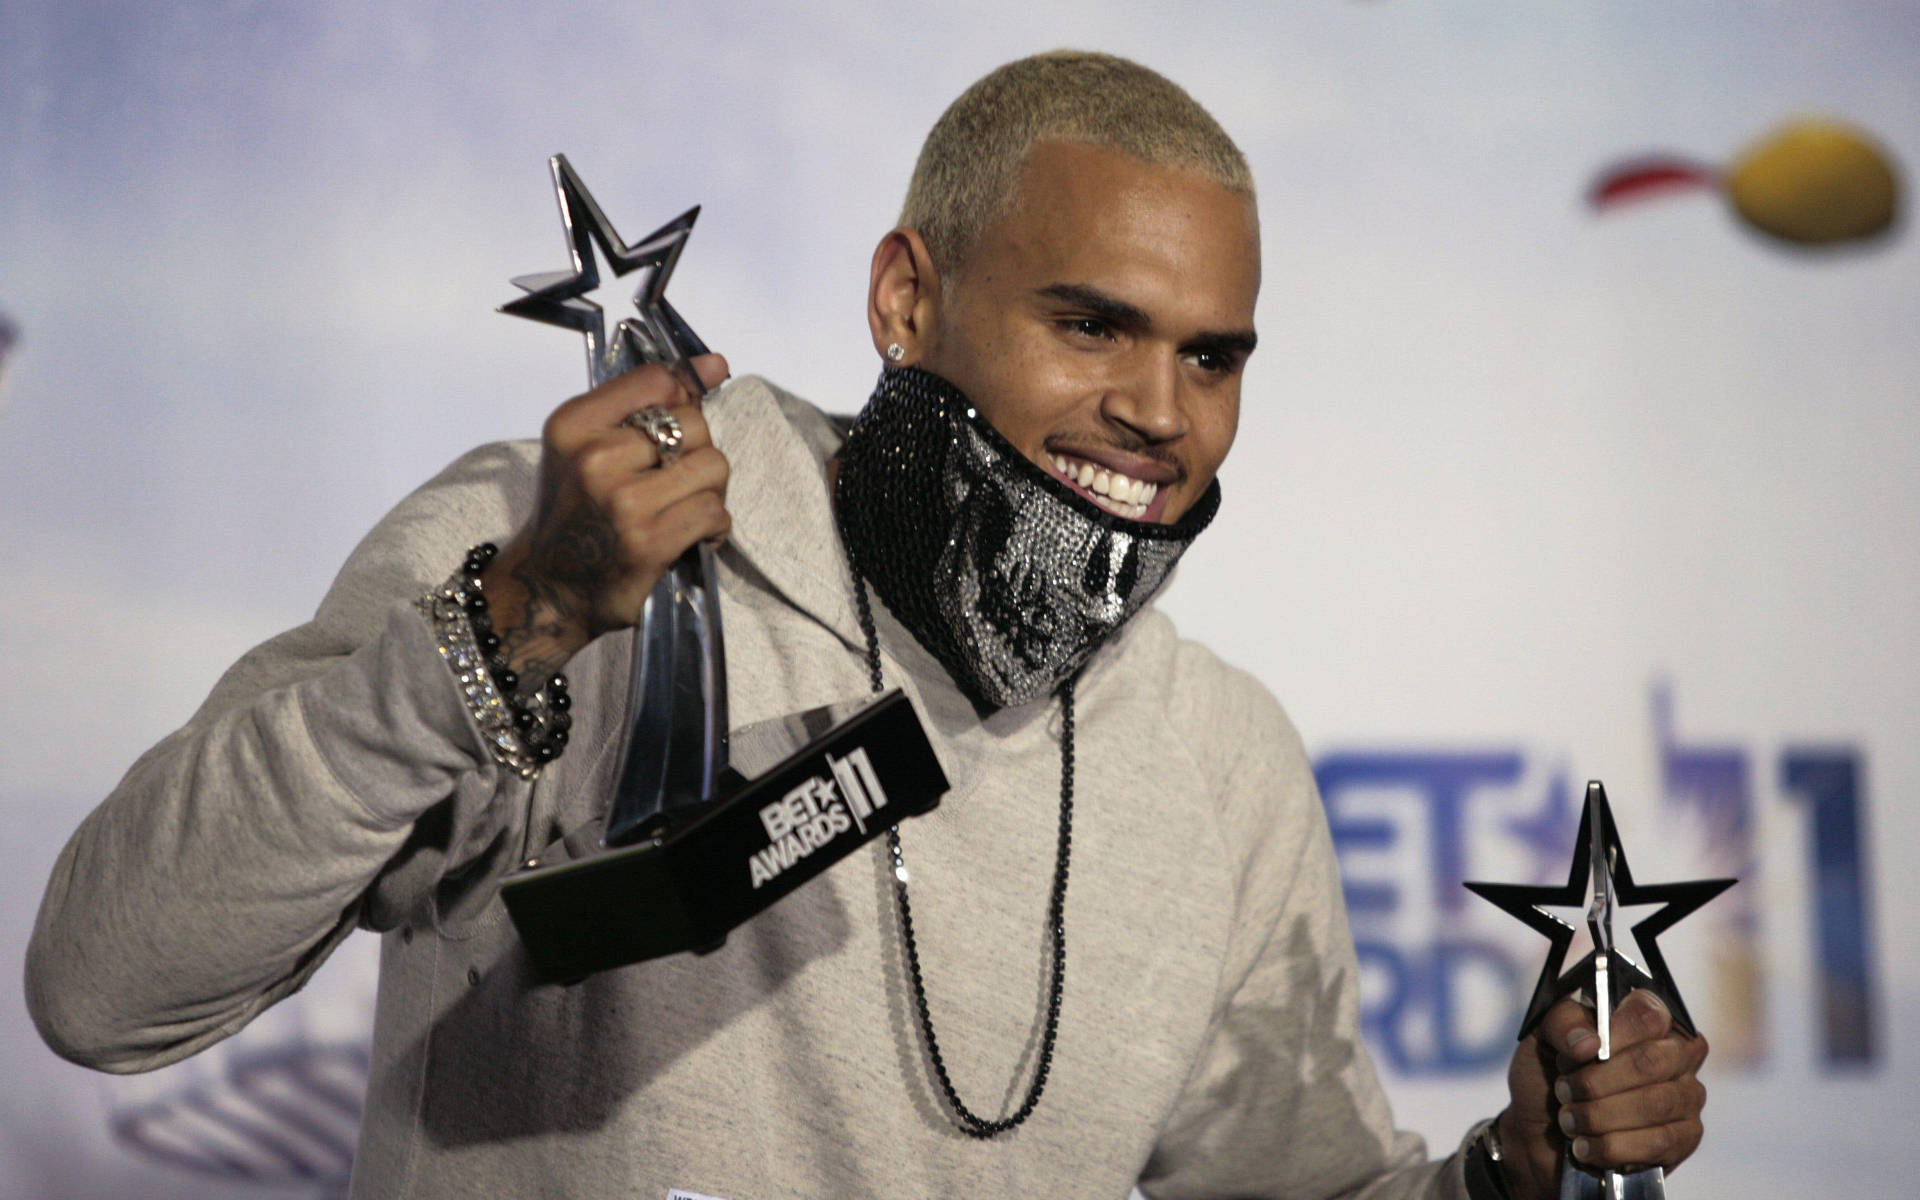 Chris Brown Bet Awards